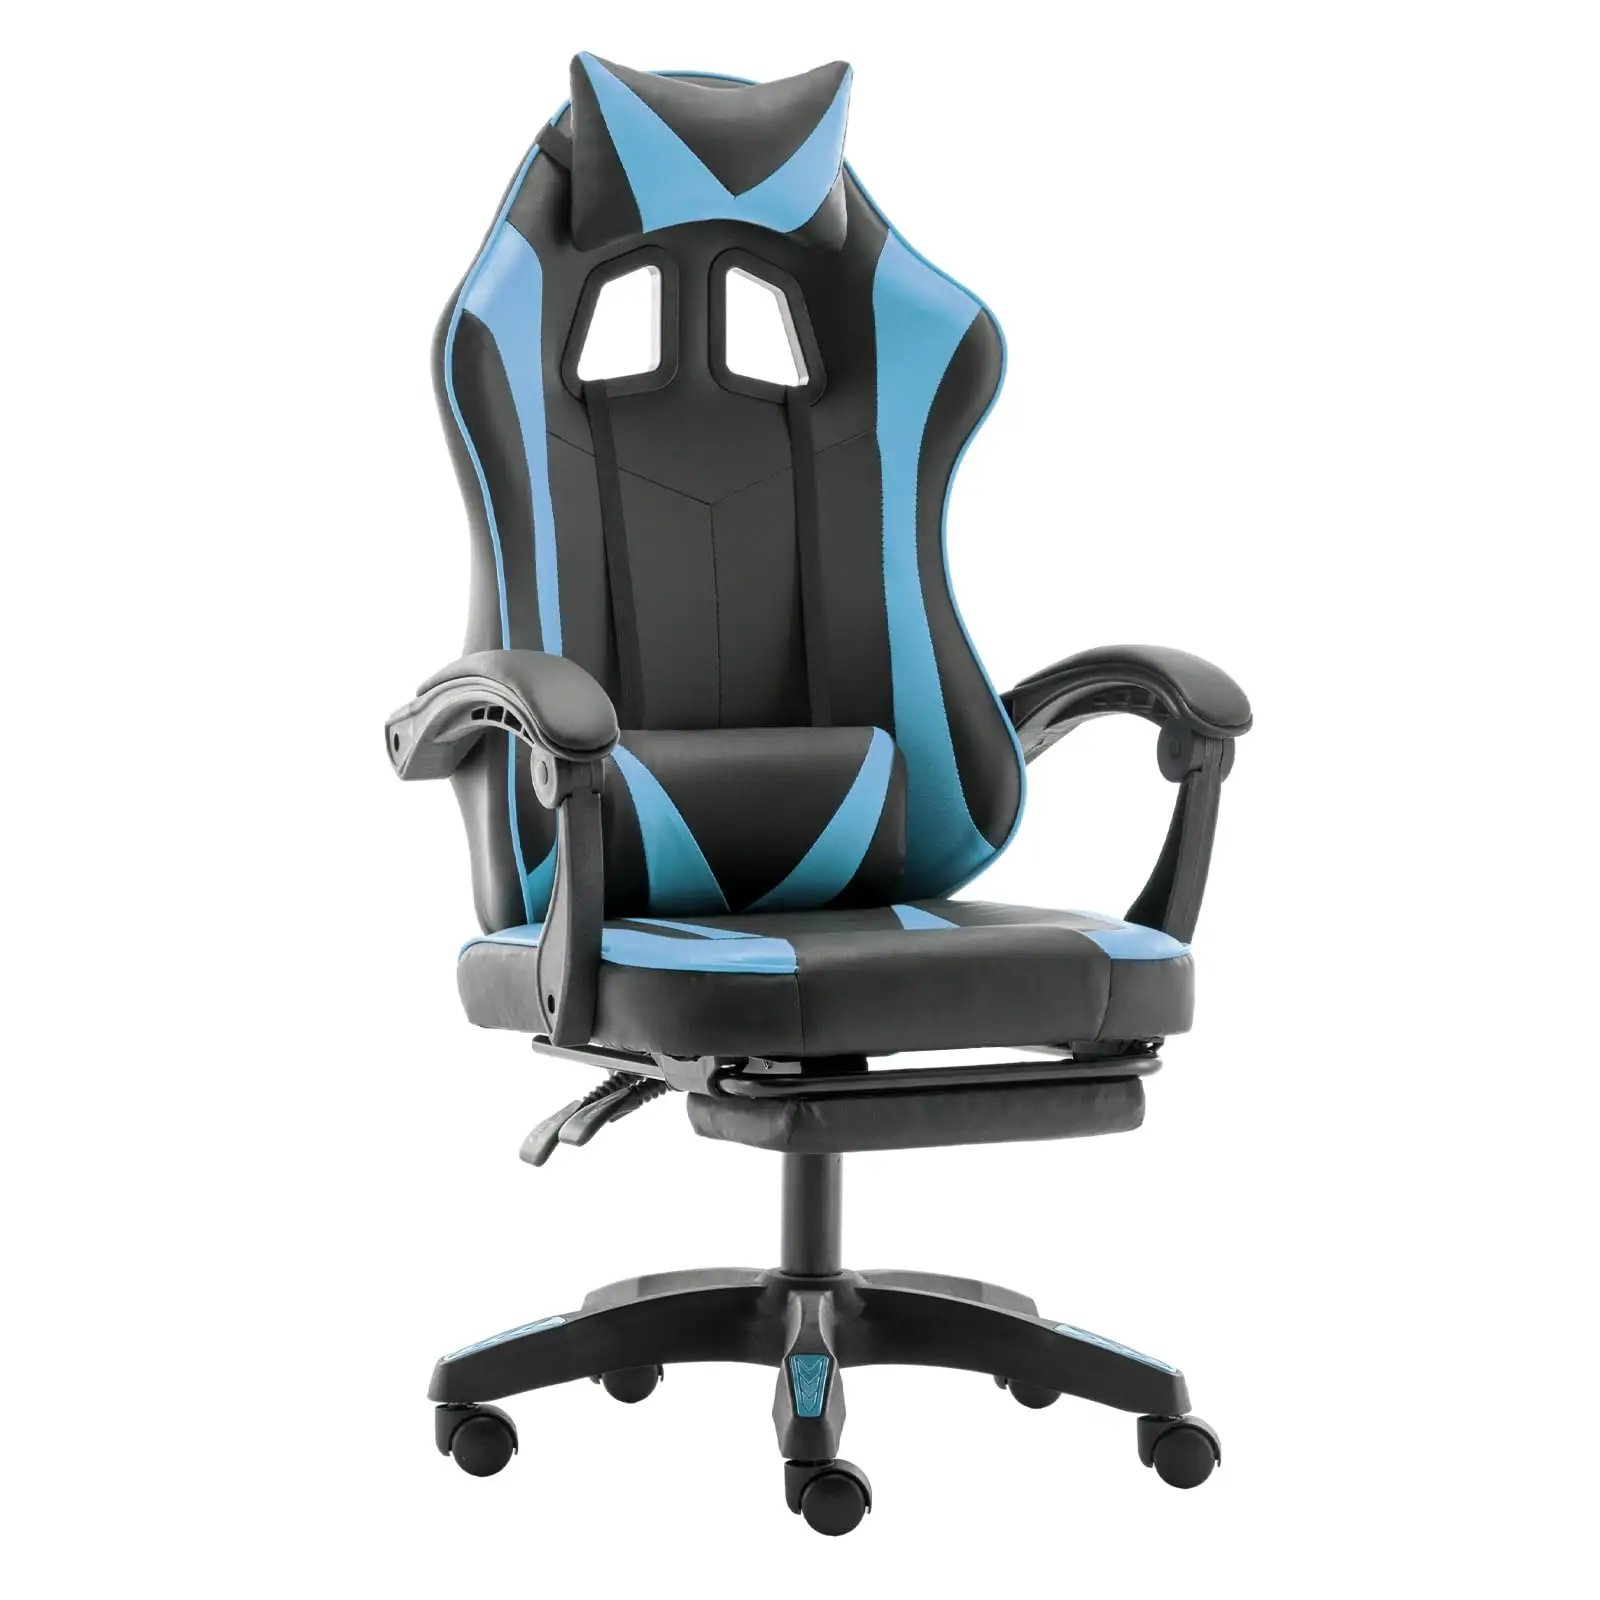 Kursi bermain, kursi punggung tinggi ergonomis Video Game tinggi dapat diatur dengan dukungan Lumbar A